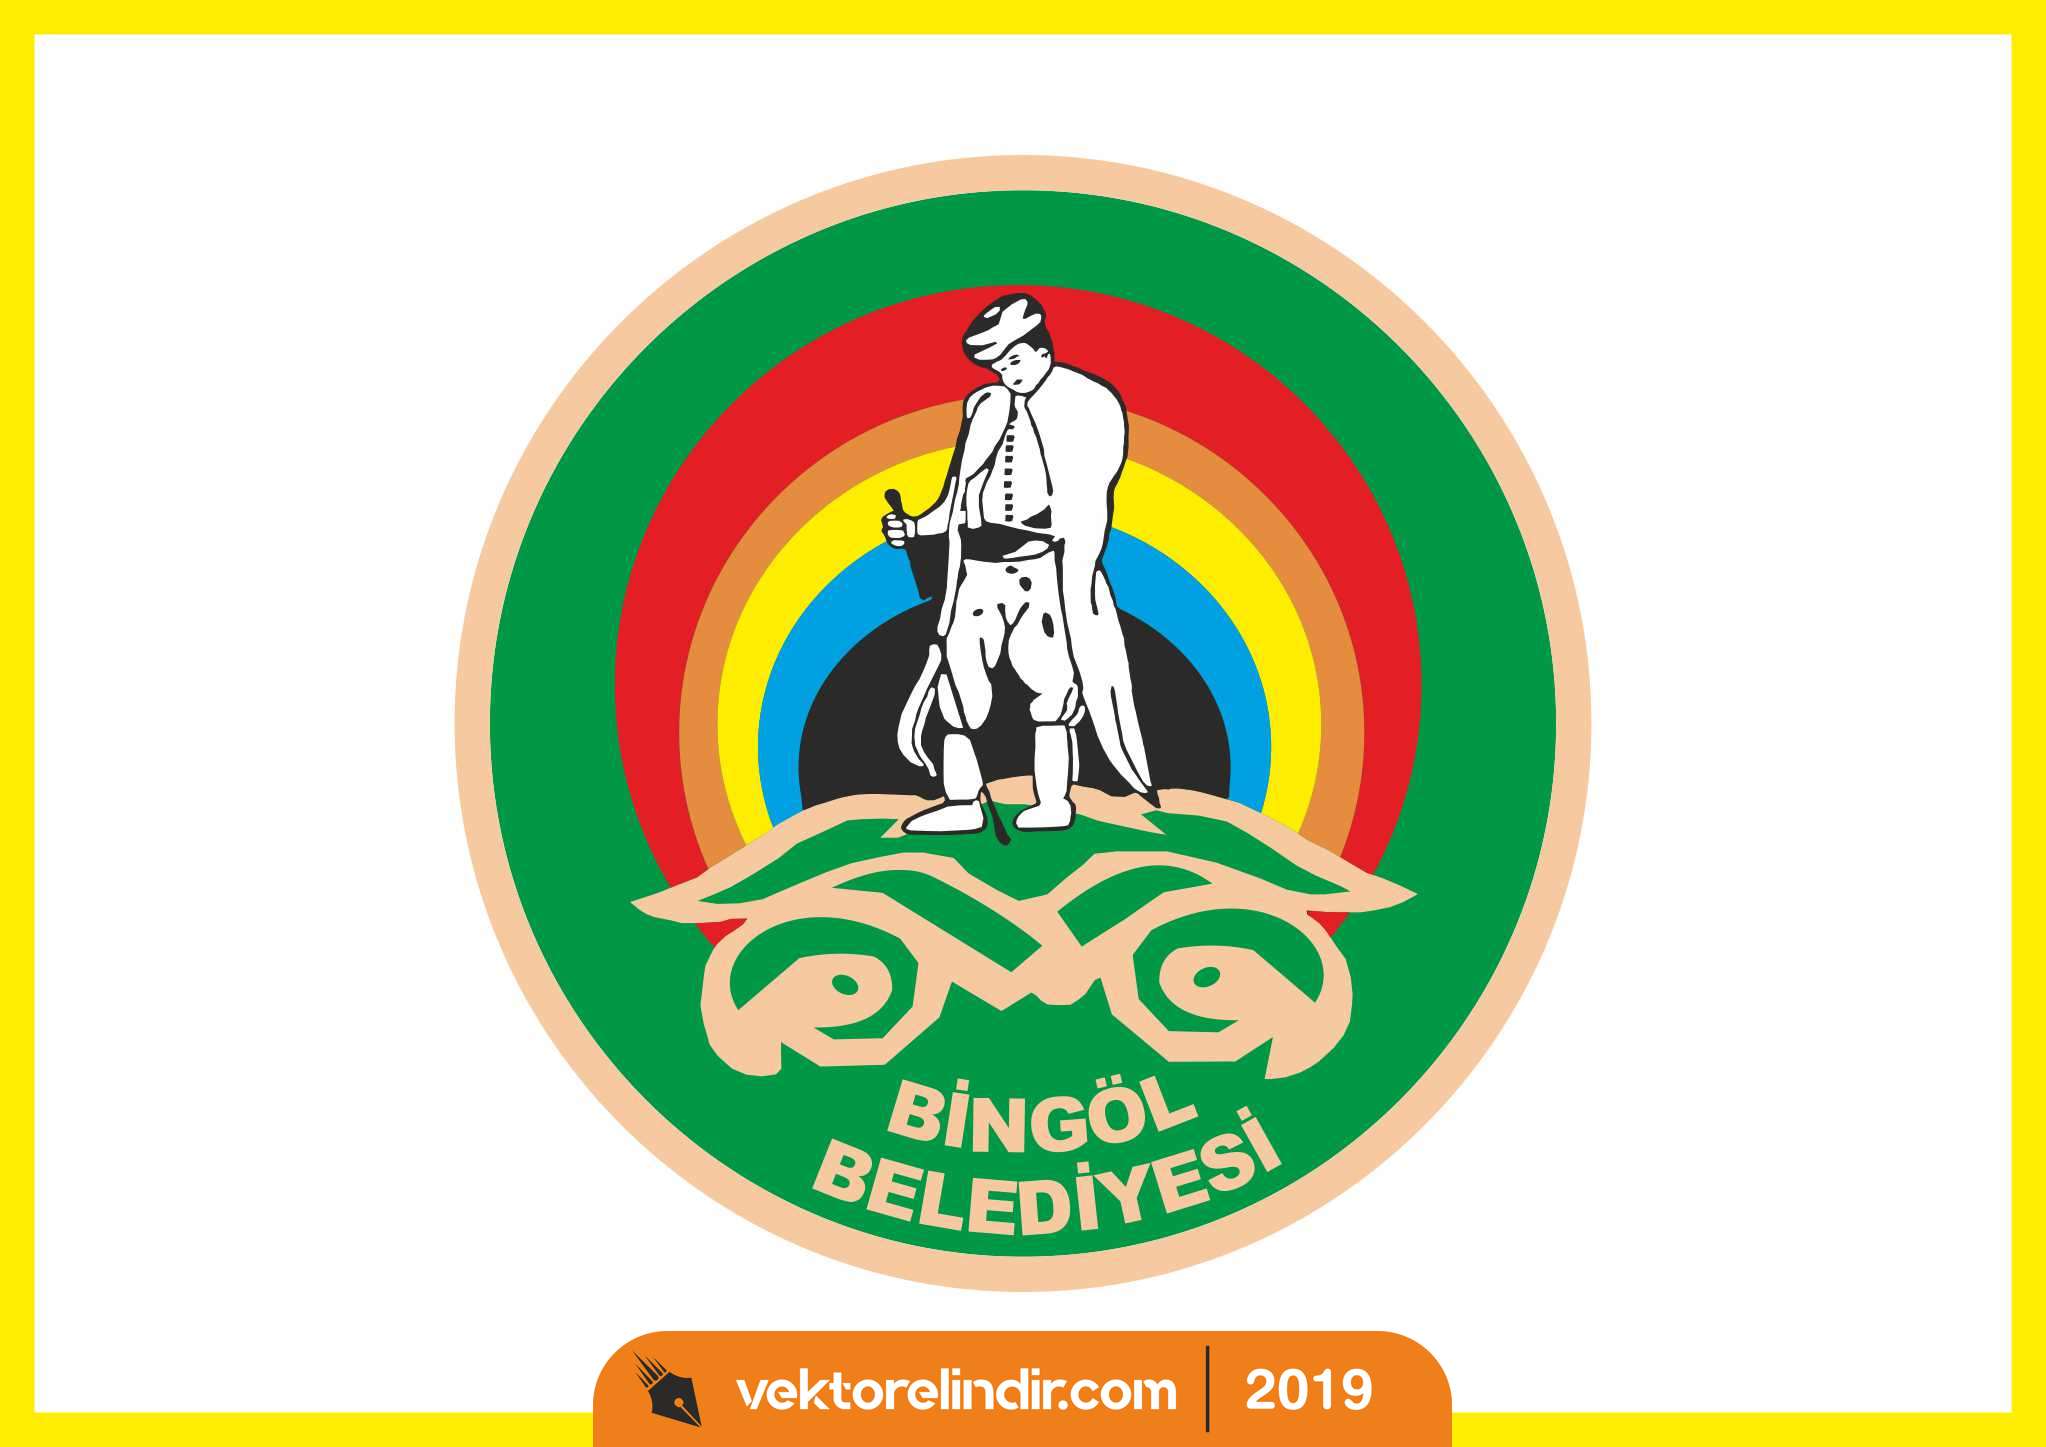 Bingöl Belediyesi Logo, Amblem